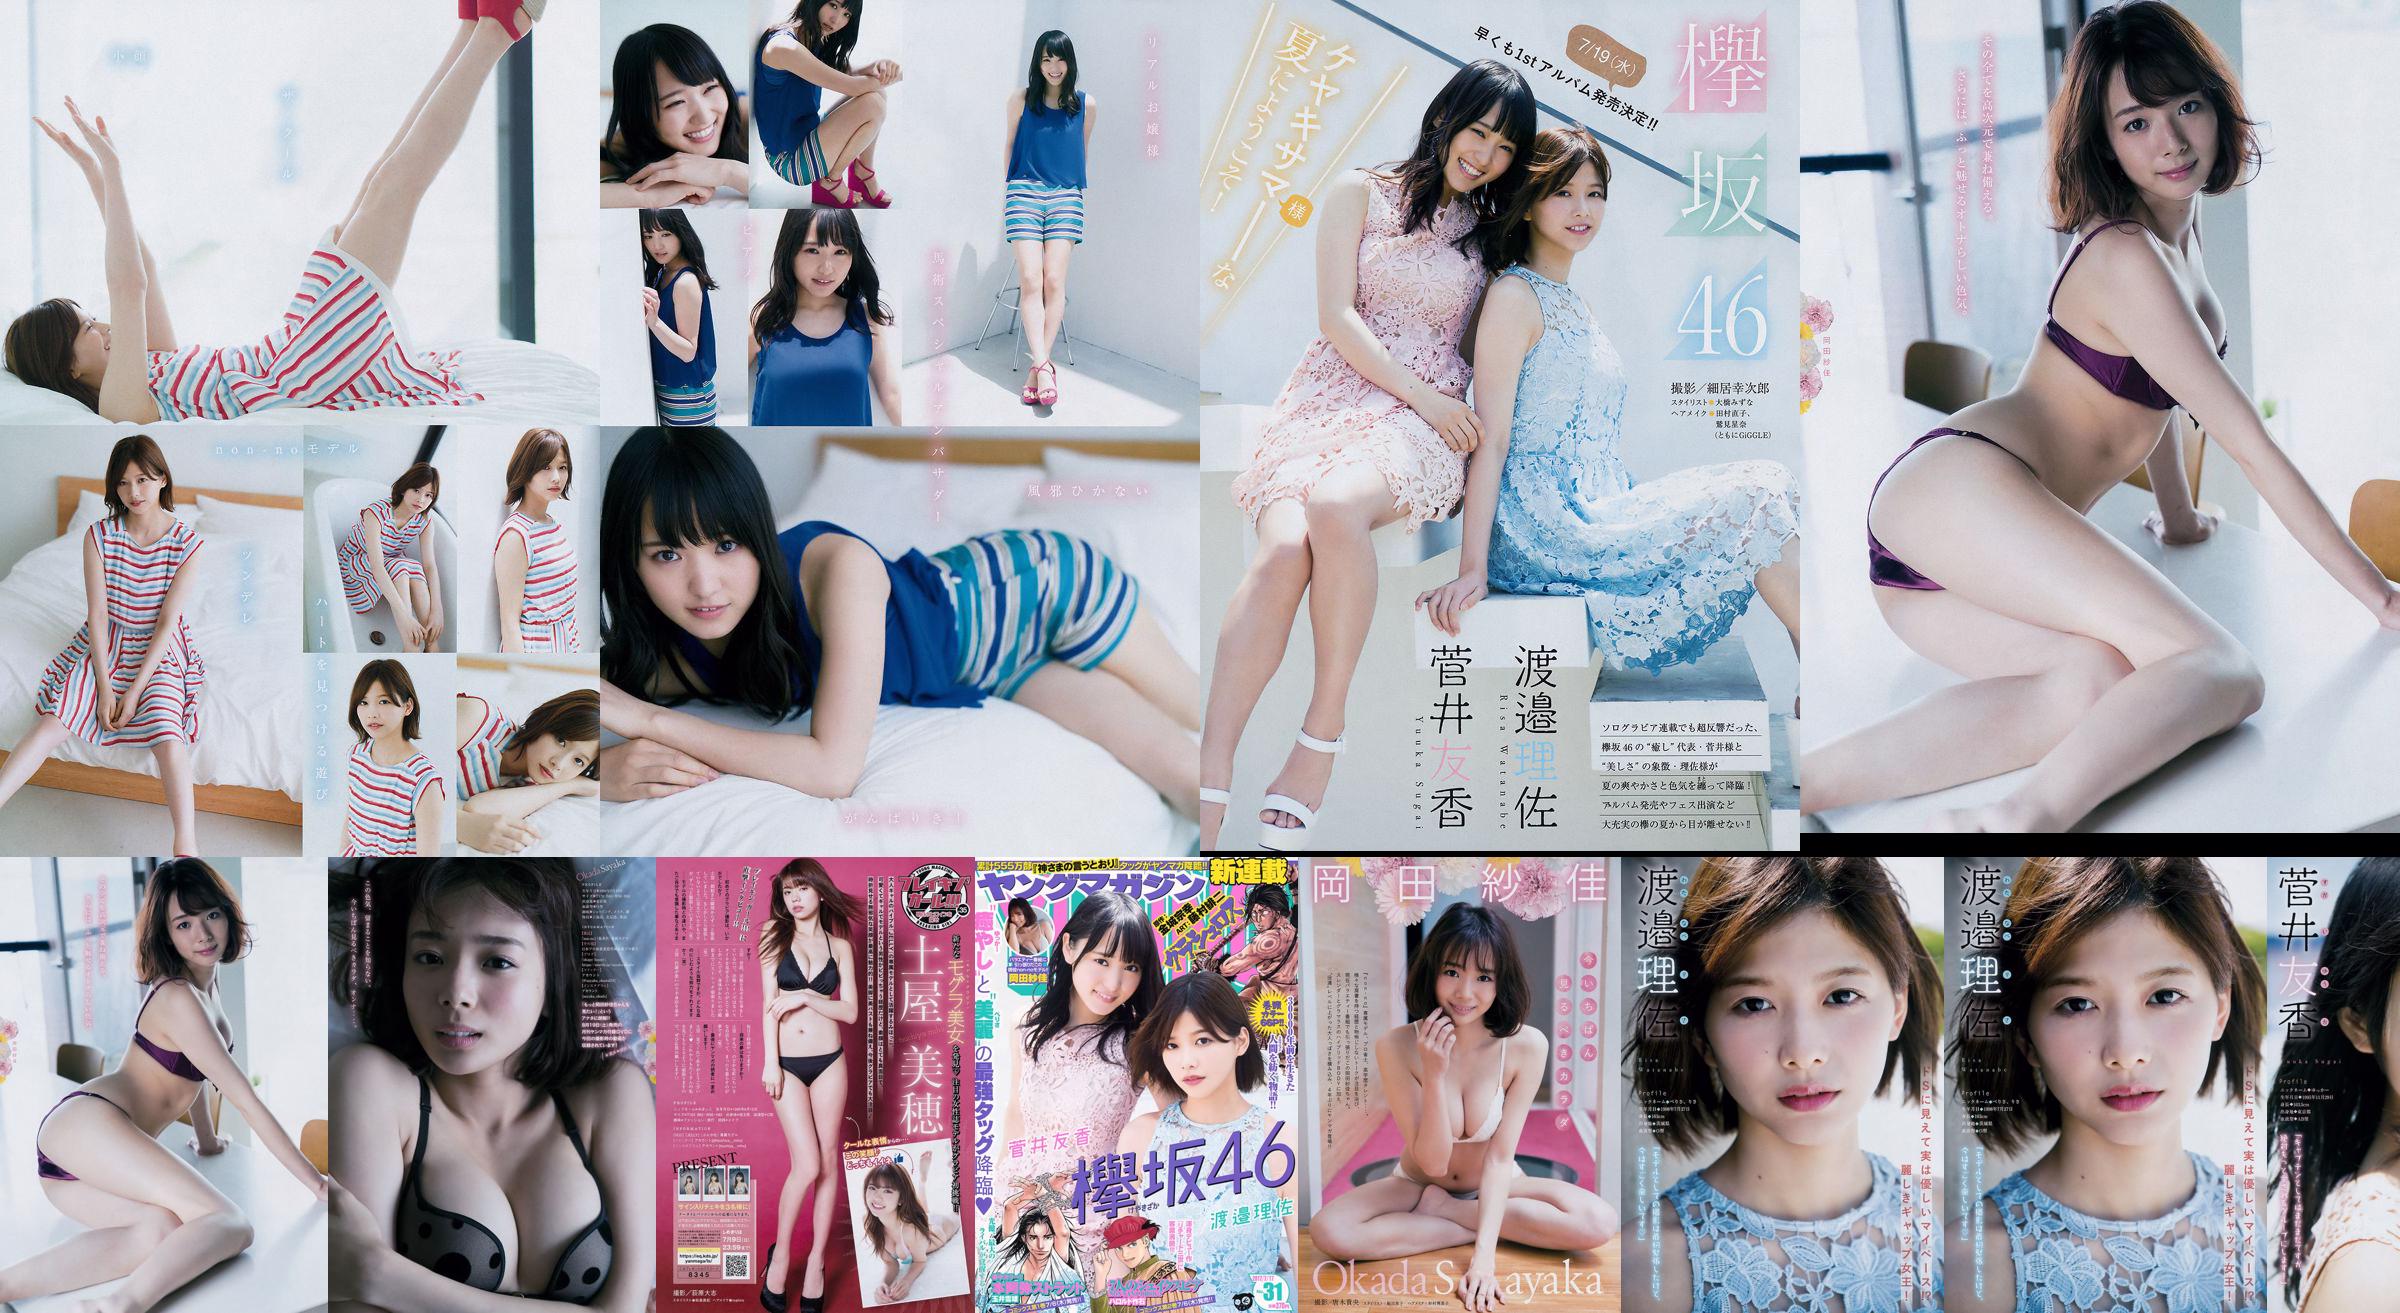 [Young Magazine] Watanabe Risa, Sugai Yuka, Okada Saika 2017 No.31 Photo Magazine No.8cc50b Page 3